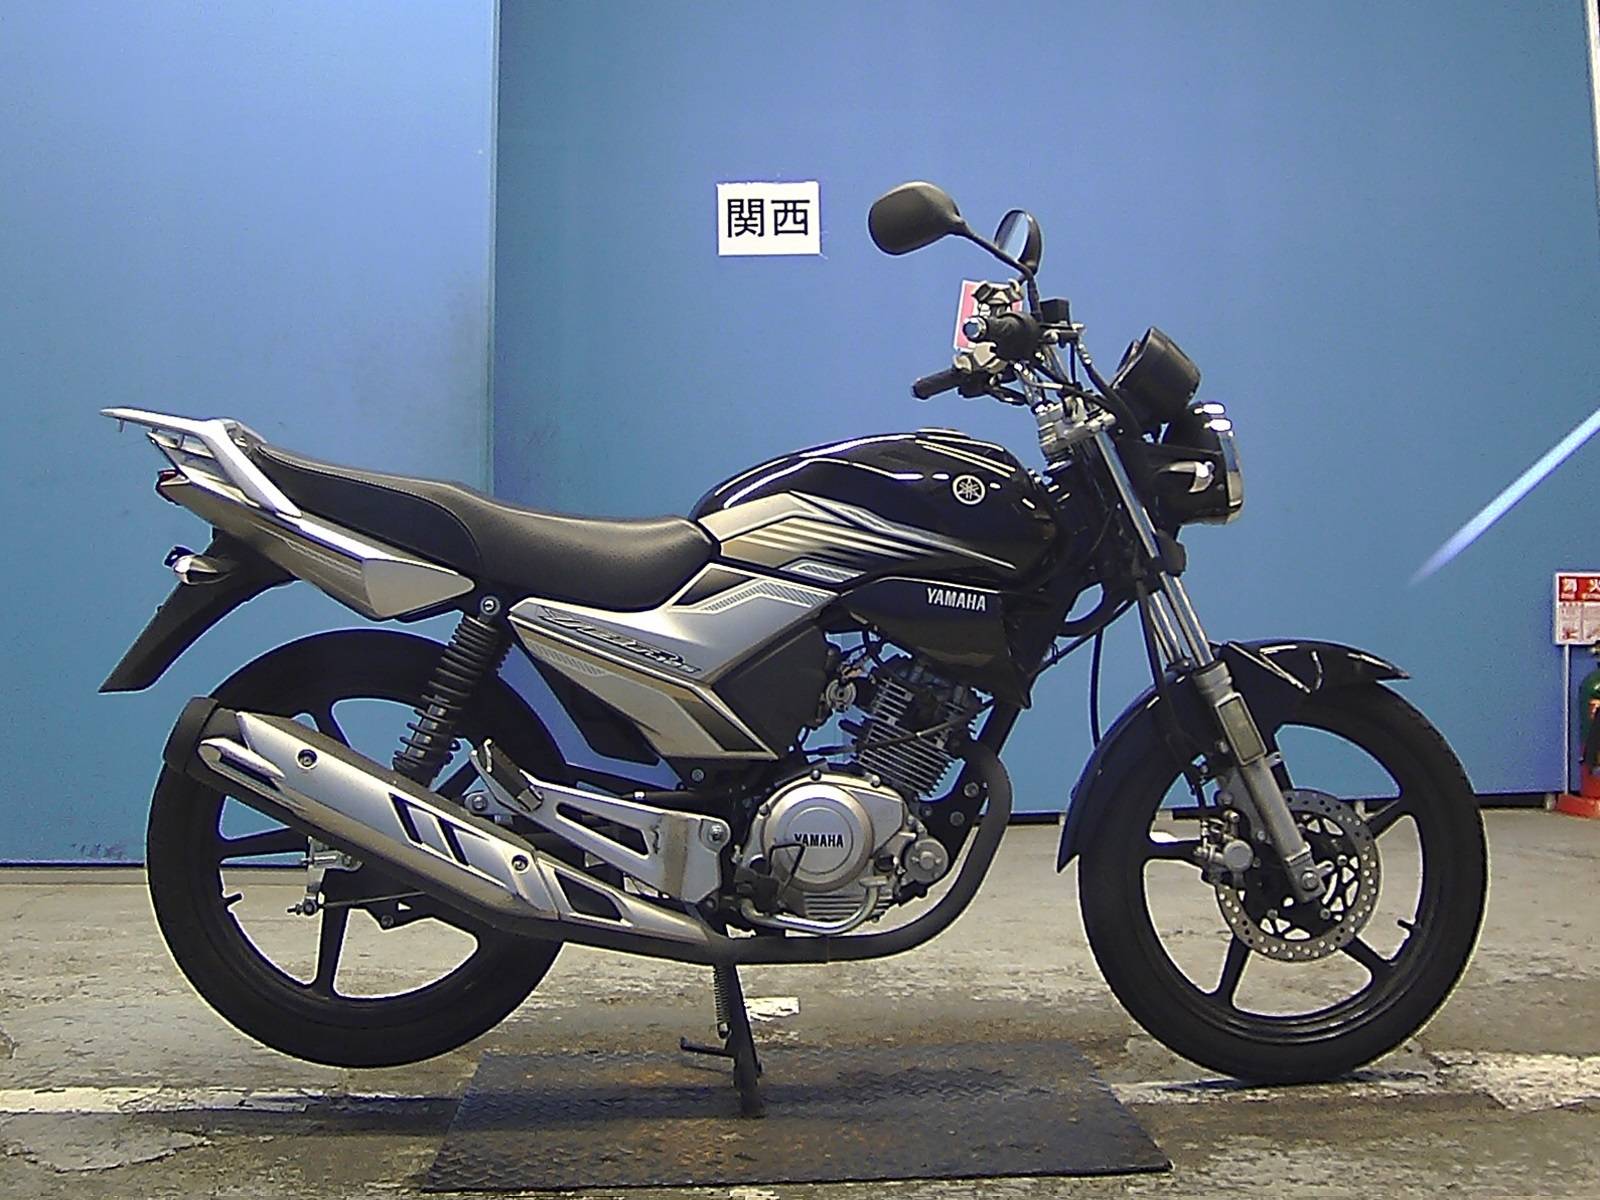 Мотоцикл yamaha ybr 125: технические и внешние характеристики, плюсы и минусы